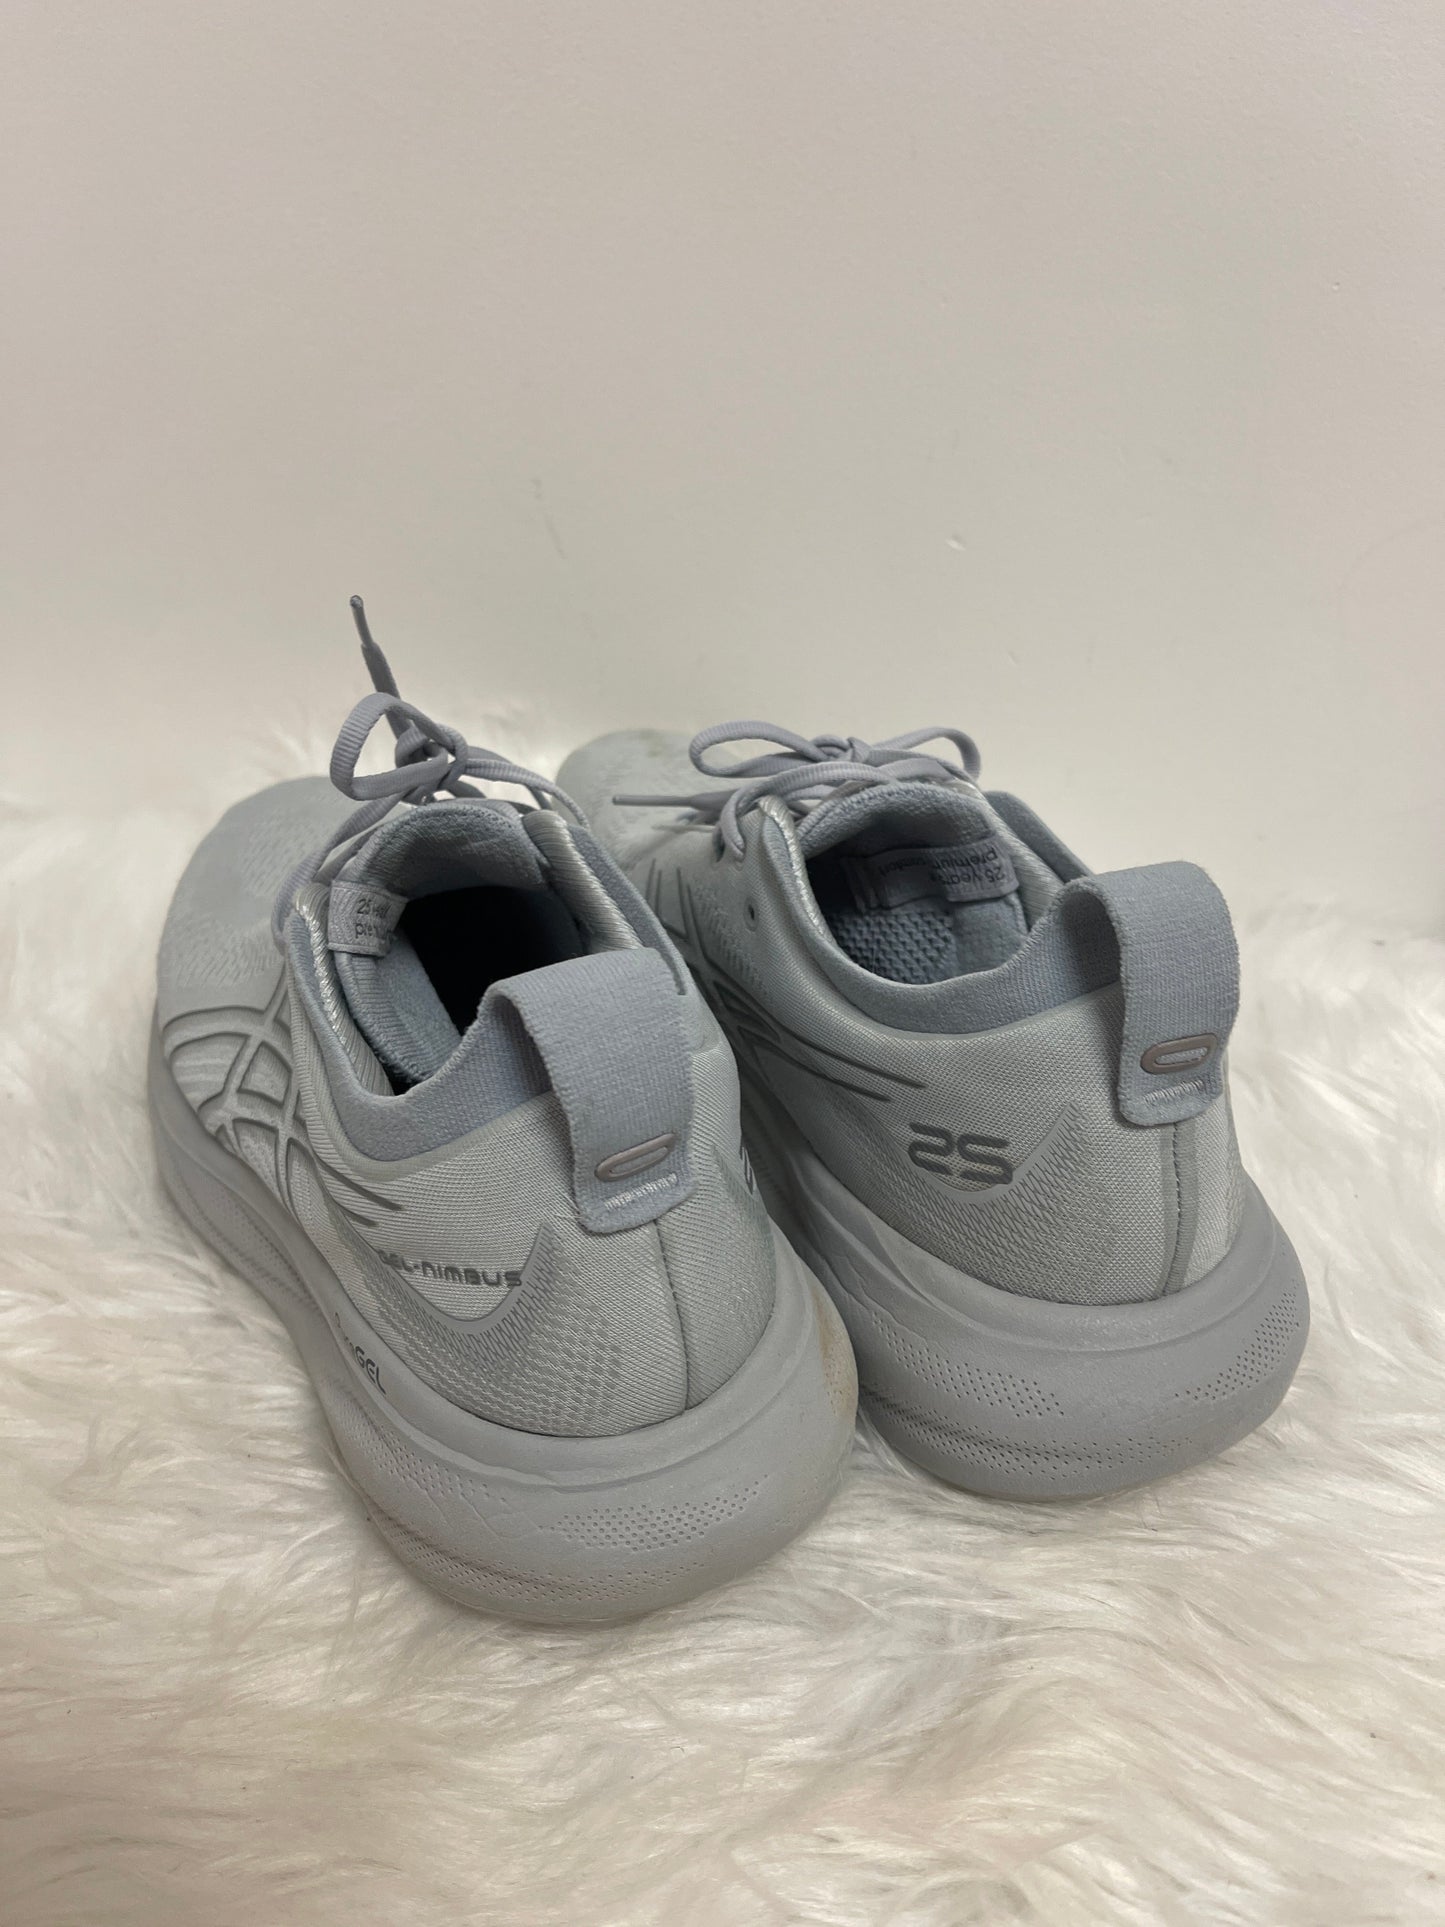 Grey Shoes Athletic Asics, Size 11